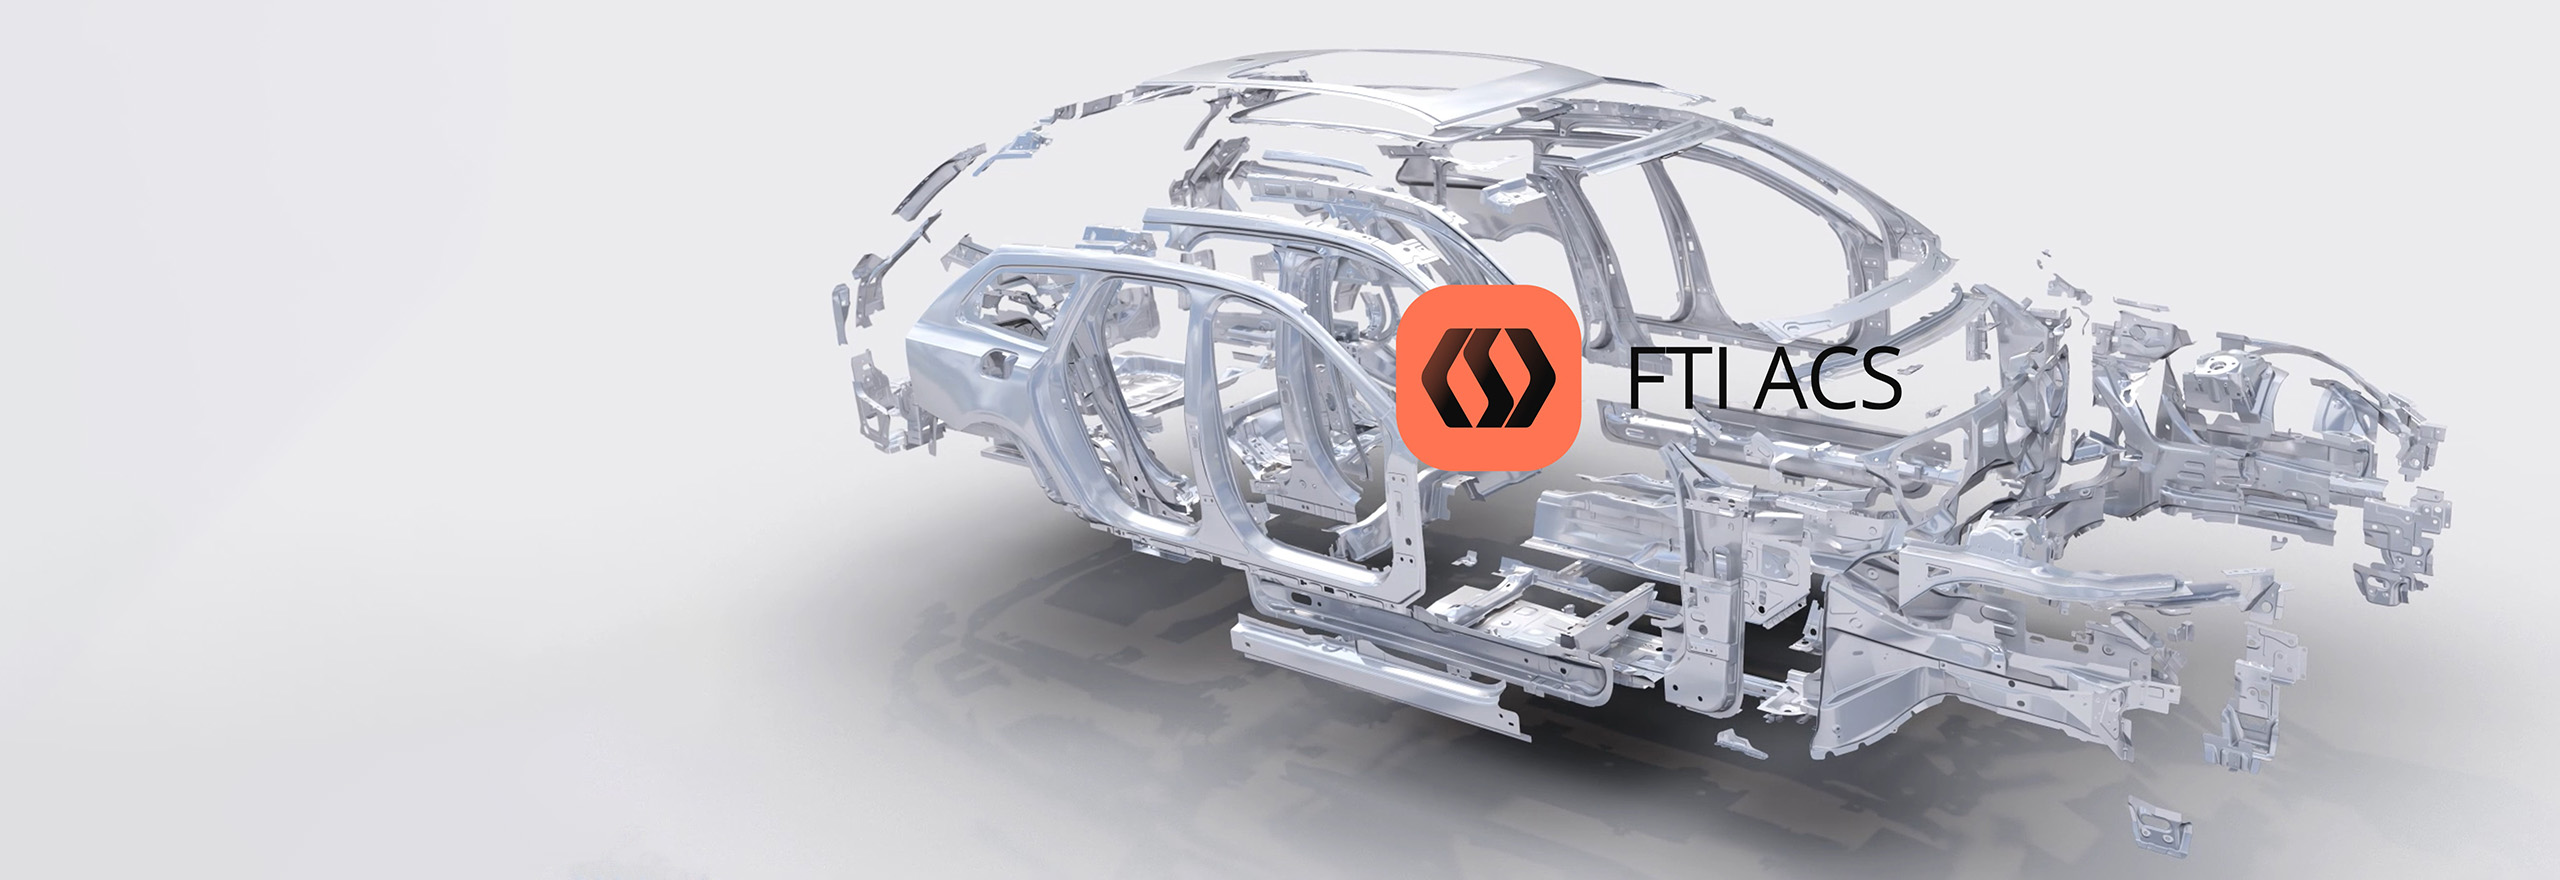 Software para la conformación de chapa metálica FTI ACS para la industria de la automoción: simulación de despiece de piezas de automóviles